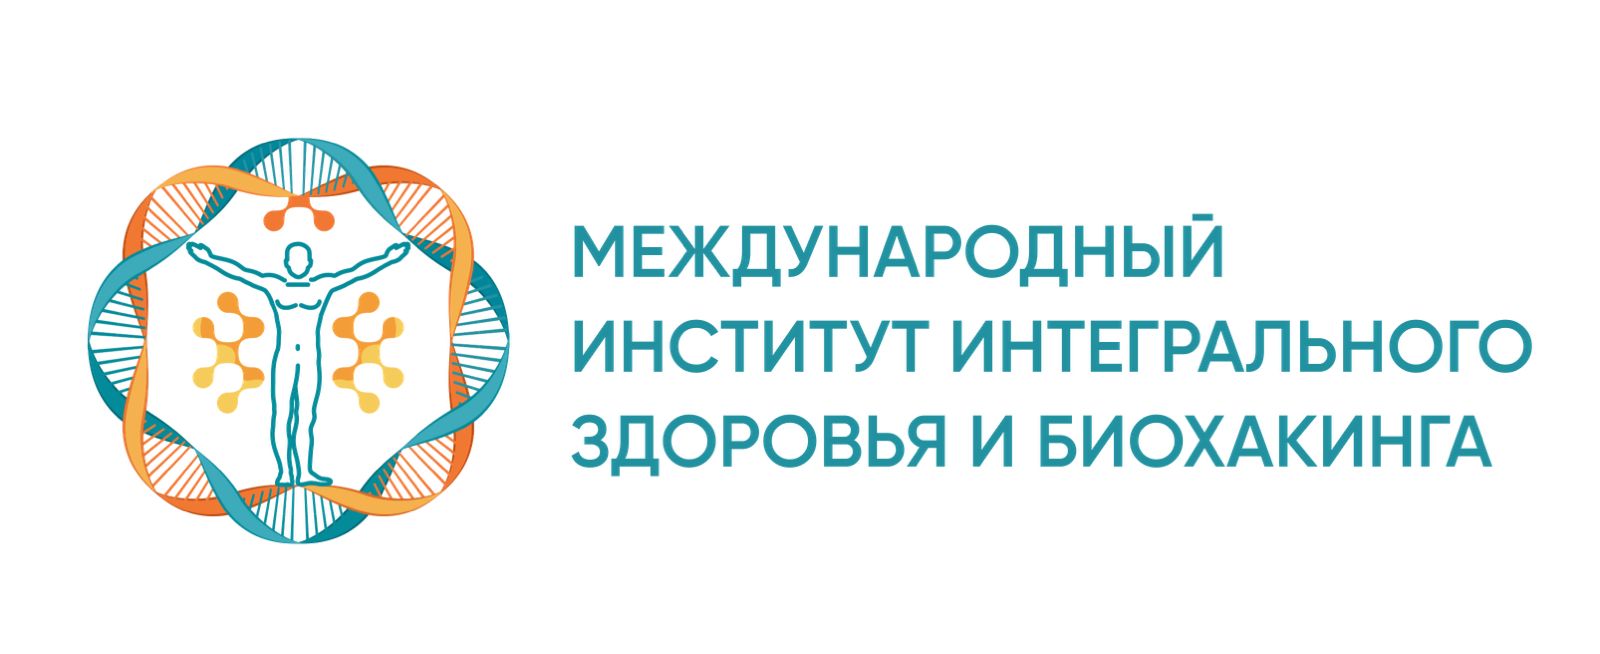 Интегральное здоровье. Логотип институт интегрального тренинга. Логотип биохакинга.